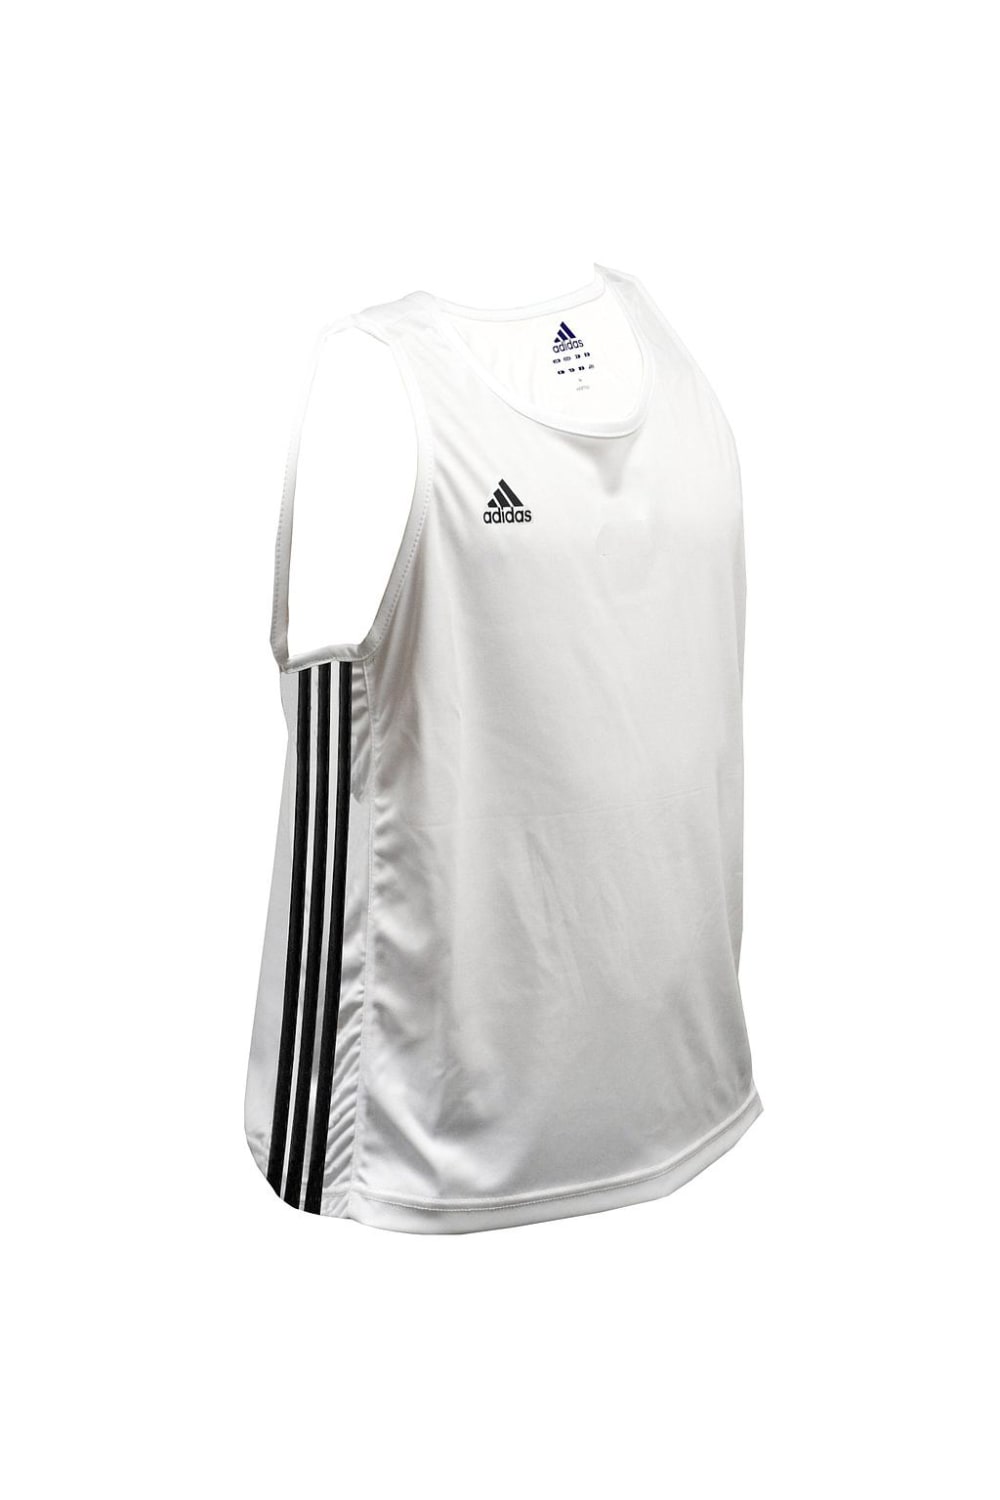 Adidas Unisex Adult Boxing Vest (White)